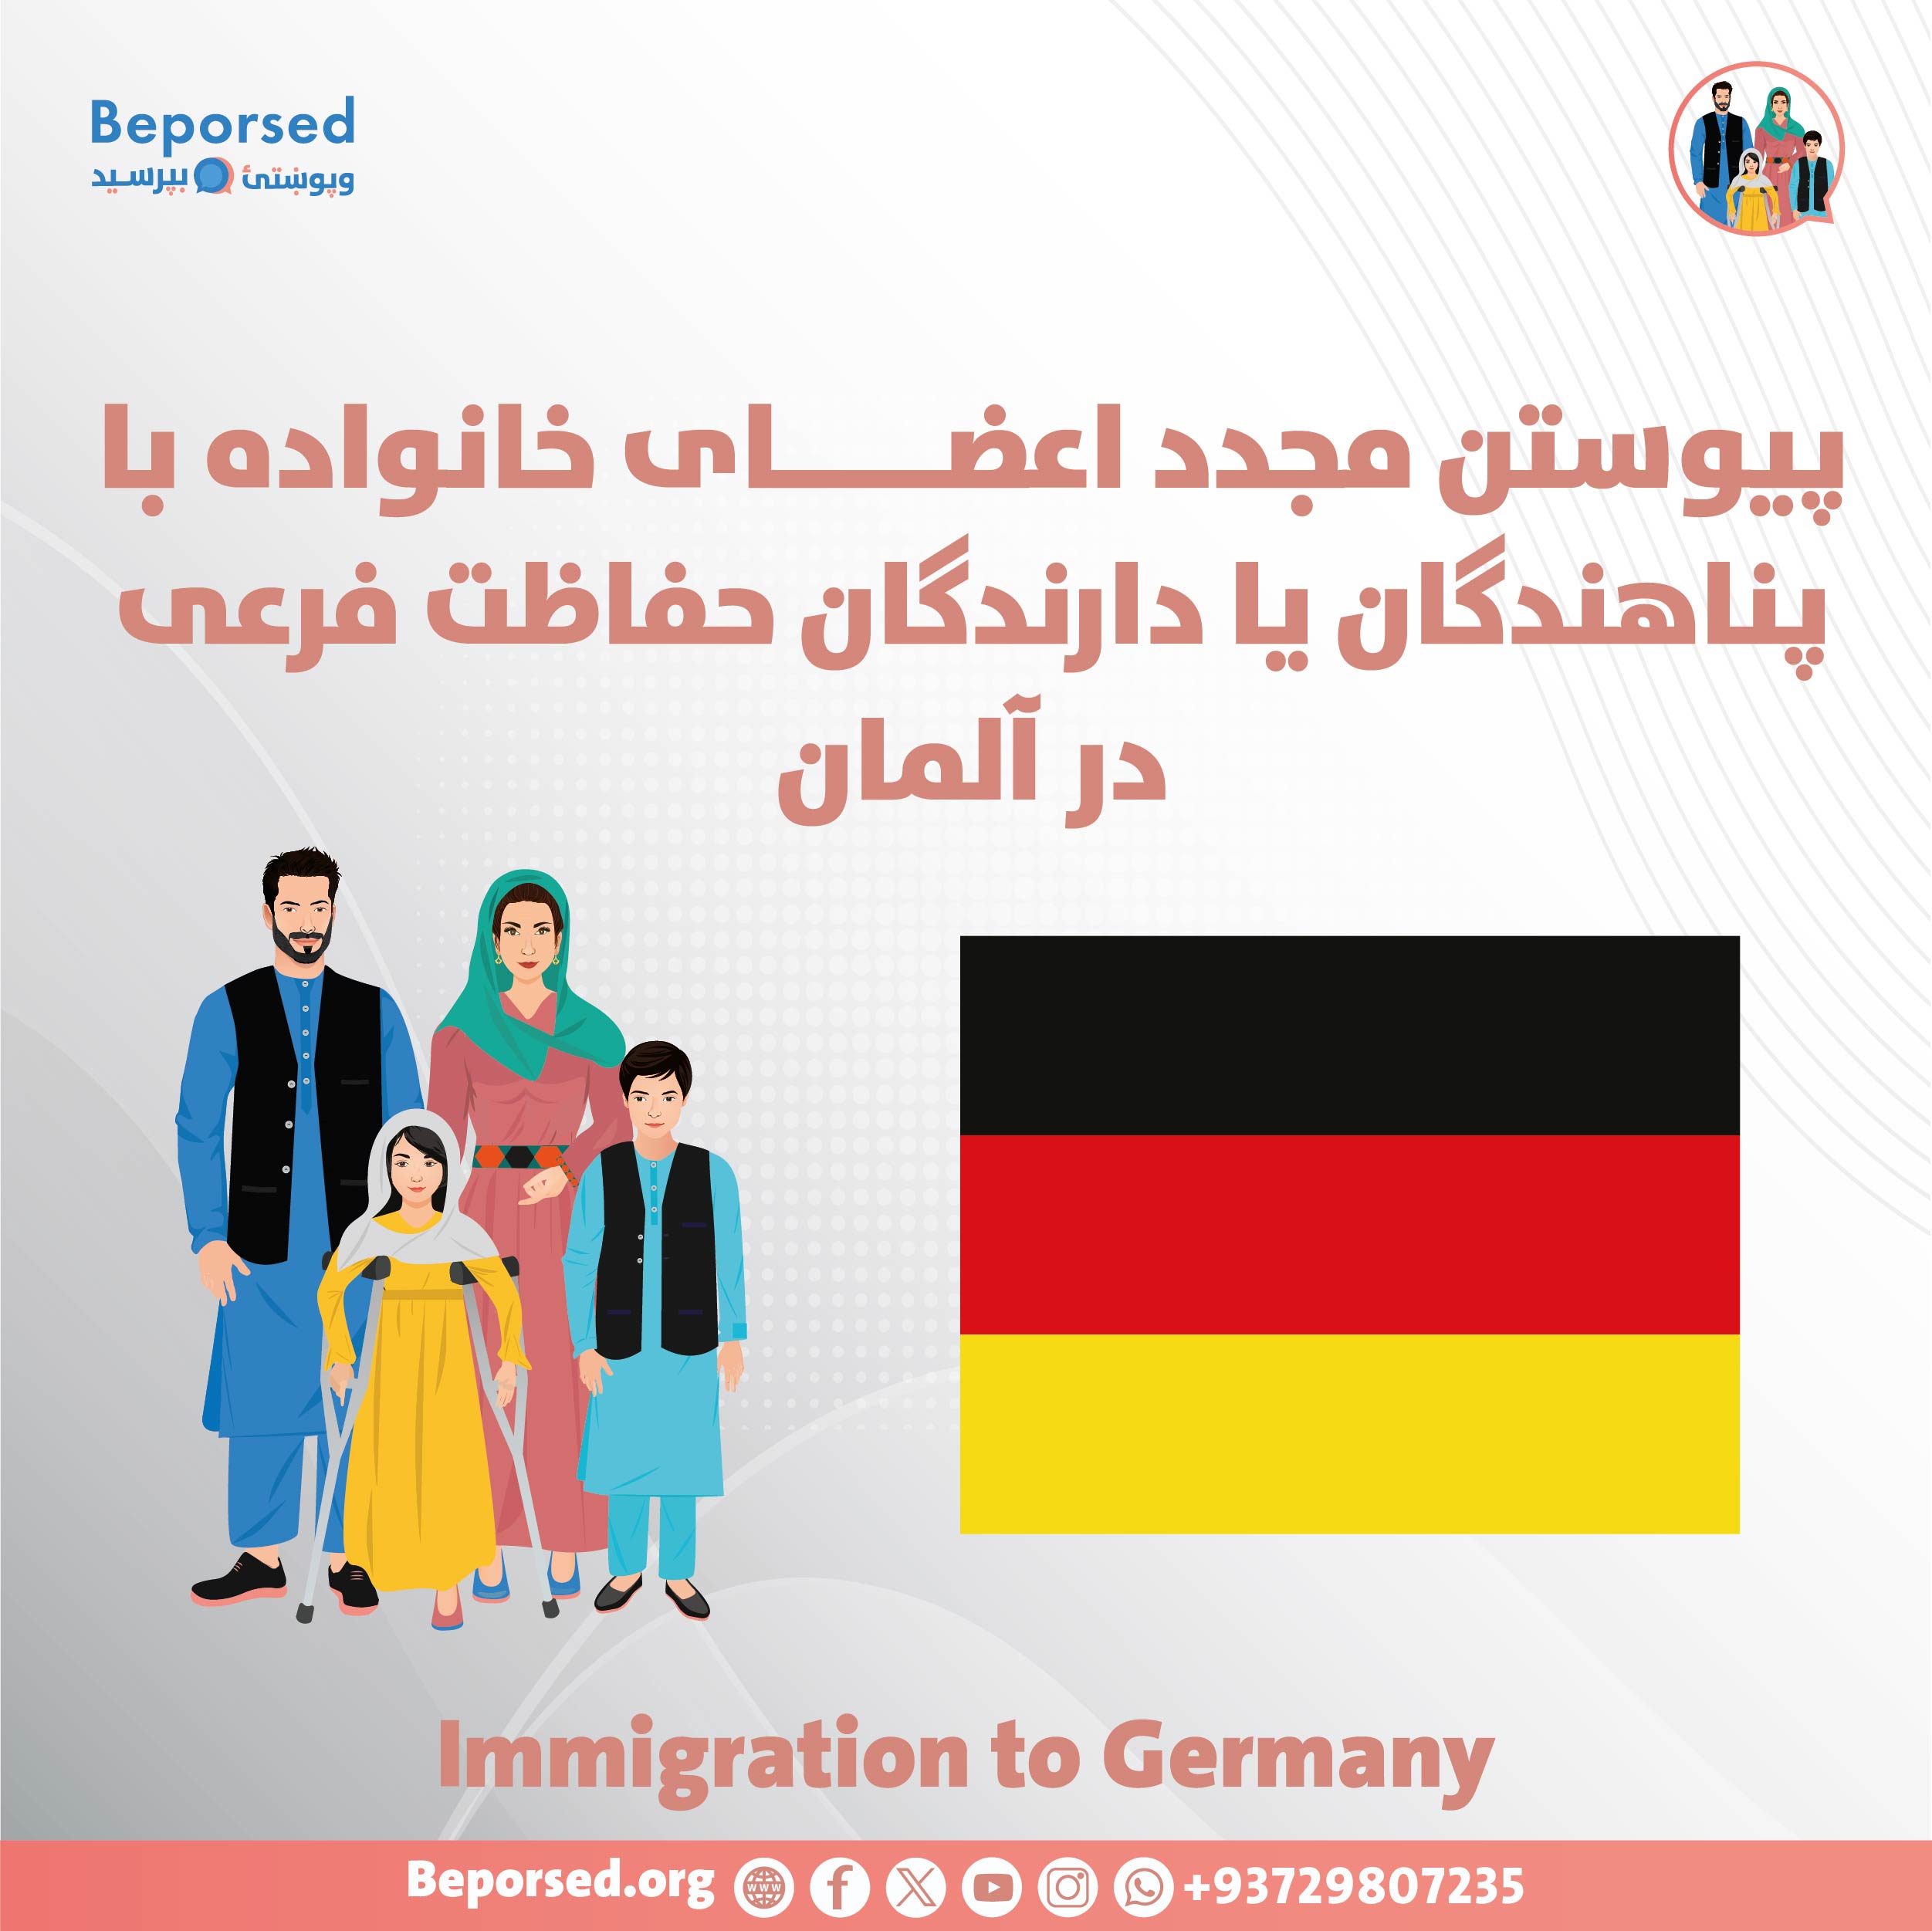 پیوستن مجدد اعضای خانواده با پناهندگان یا دارندگان حفاظت فرعی در آلمان-01.jpg